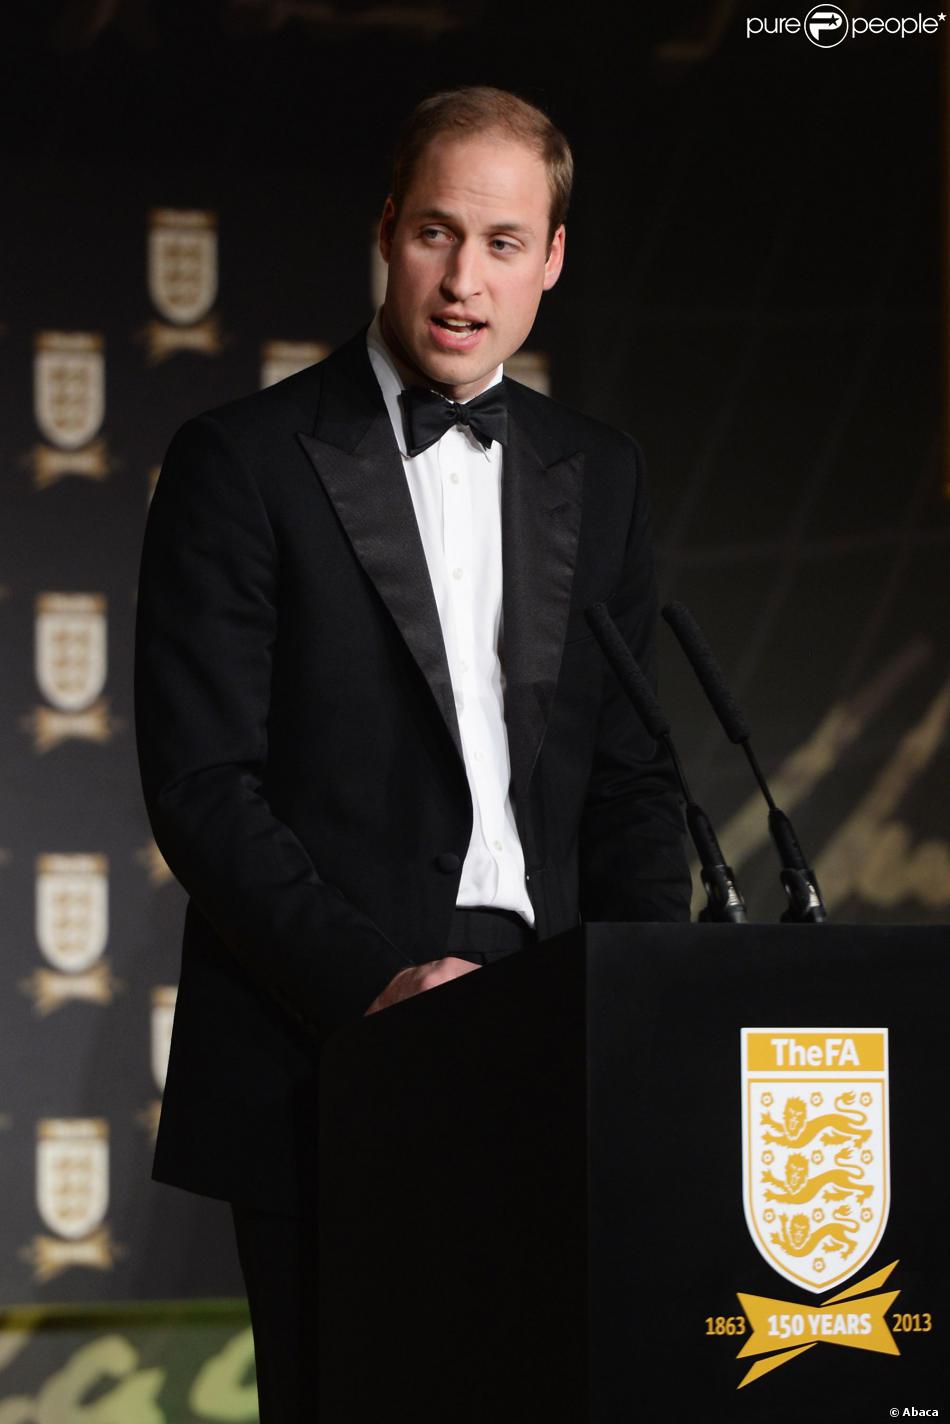 William, Duc de Cambridge, donne un discours lors du dîner de gala célébrant le 150e anniversaire de la FA au Grand Connaught Rooms de Londres, le 26 octobre 2013.